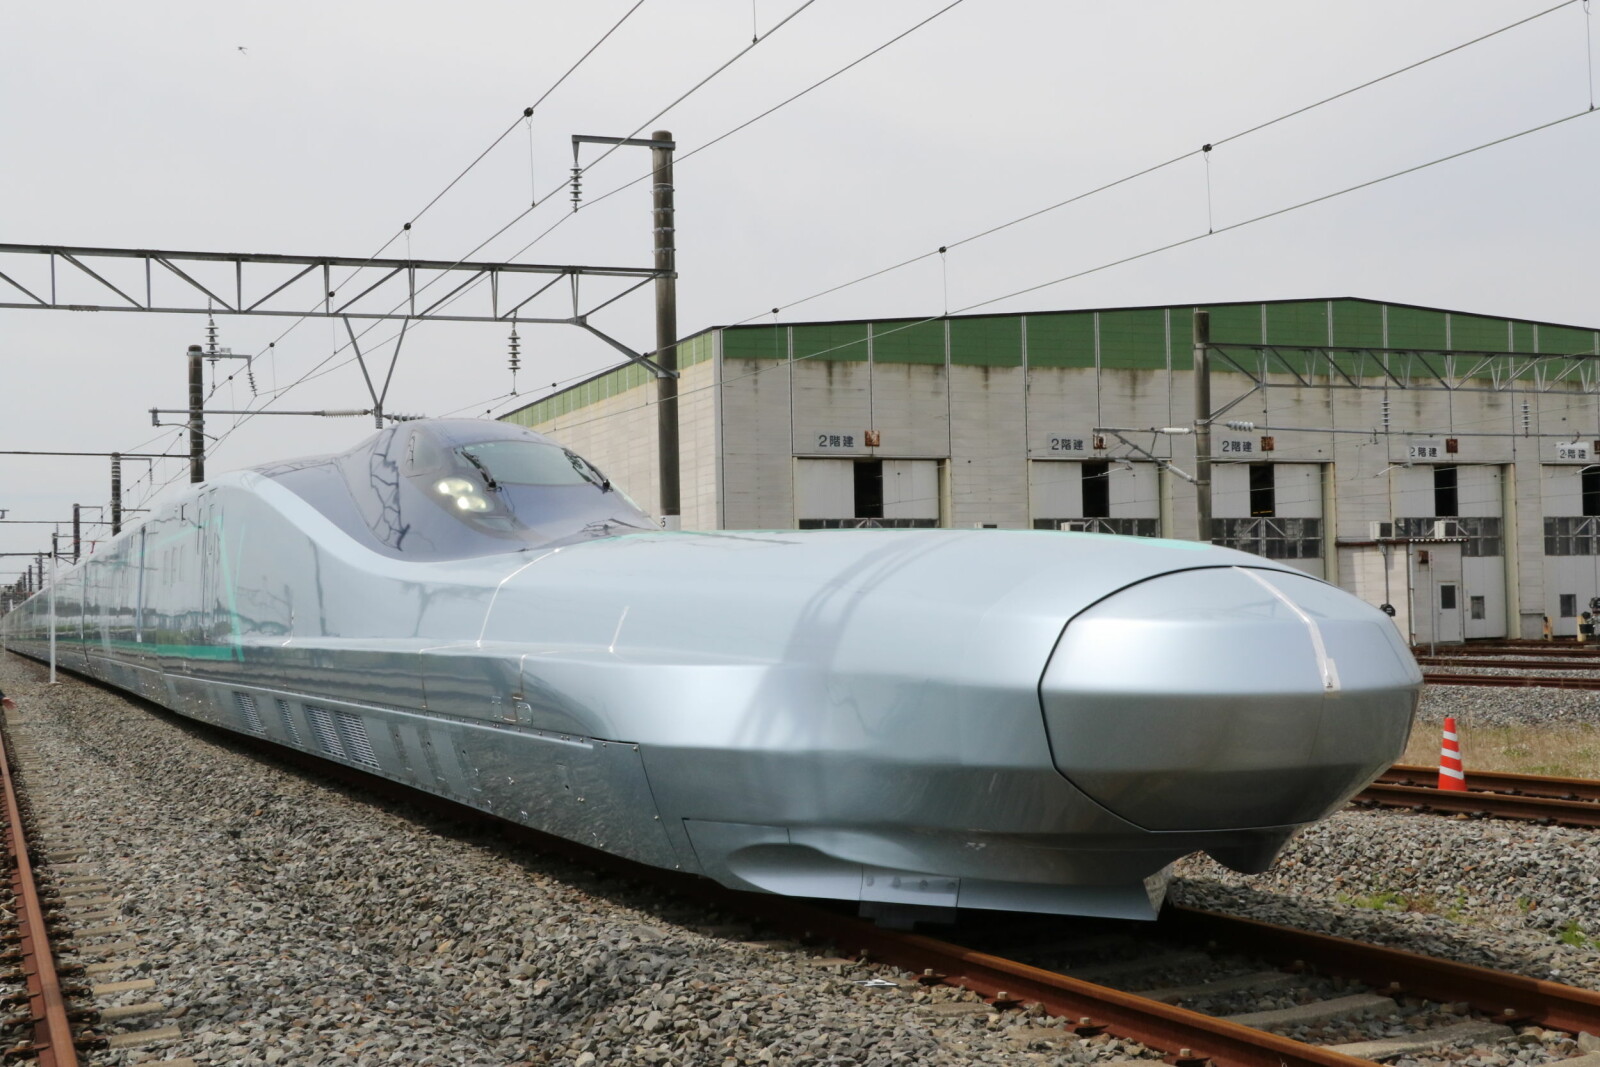 <b>NESEVIS:</b> Et ALFA-X-tog oppnådde en hastighet på 320 km/t da det ble testet 16. mai i år, men toget skal være kapabelt for langt høyere hastigheter.  